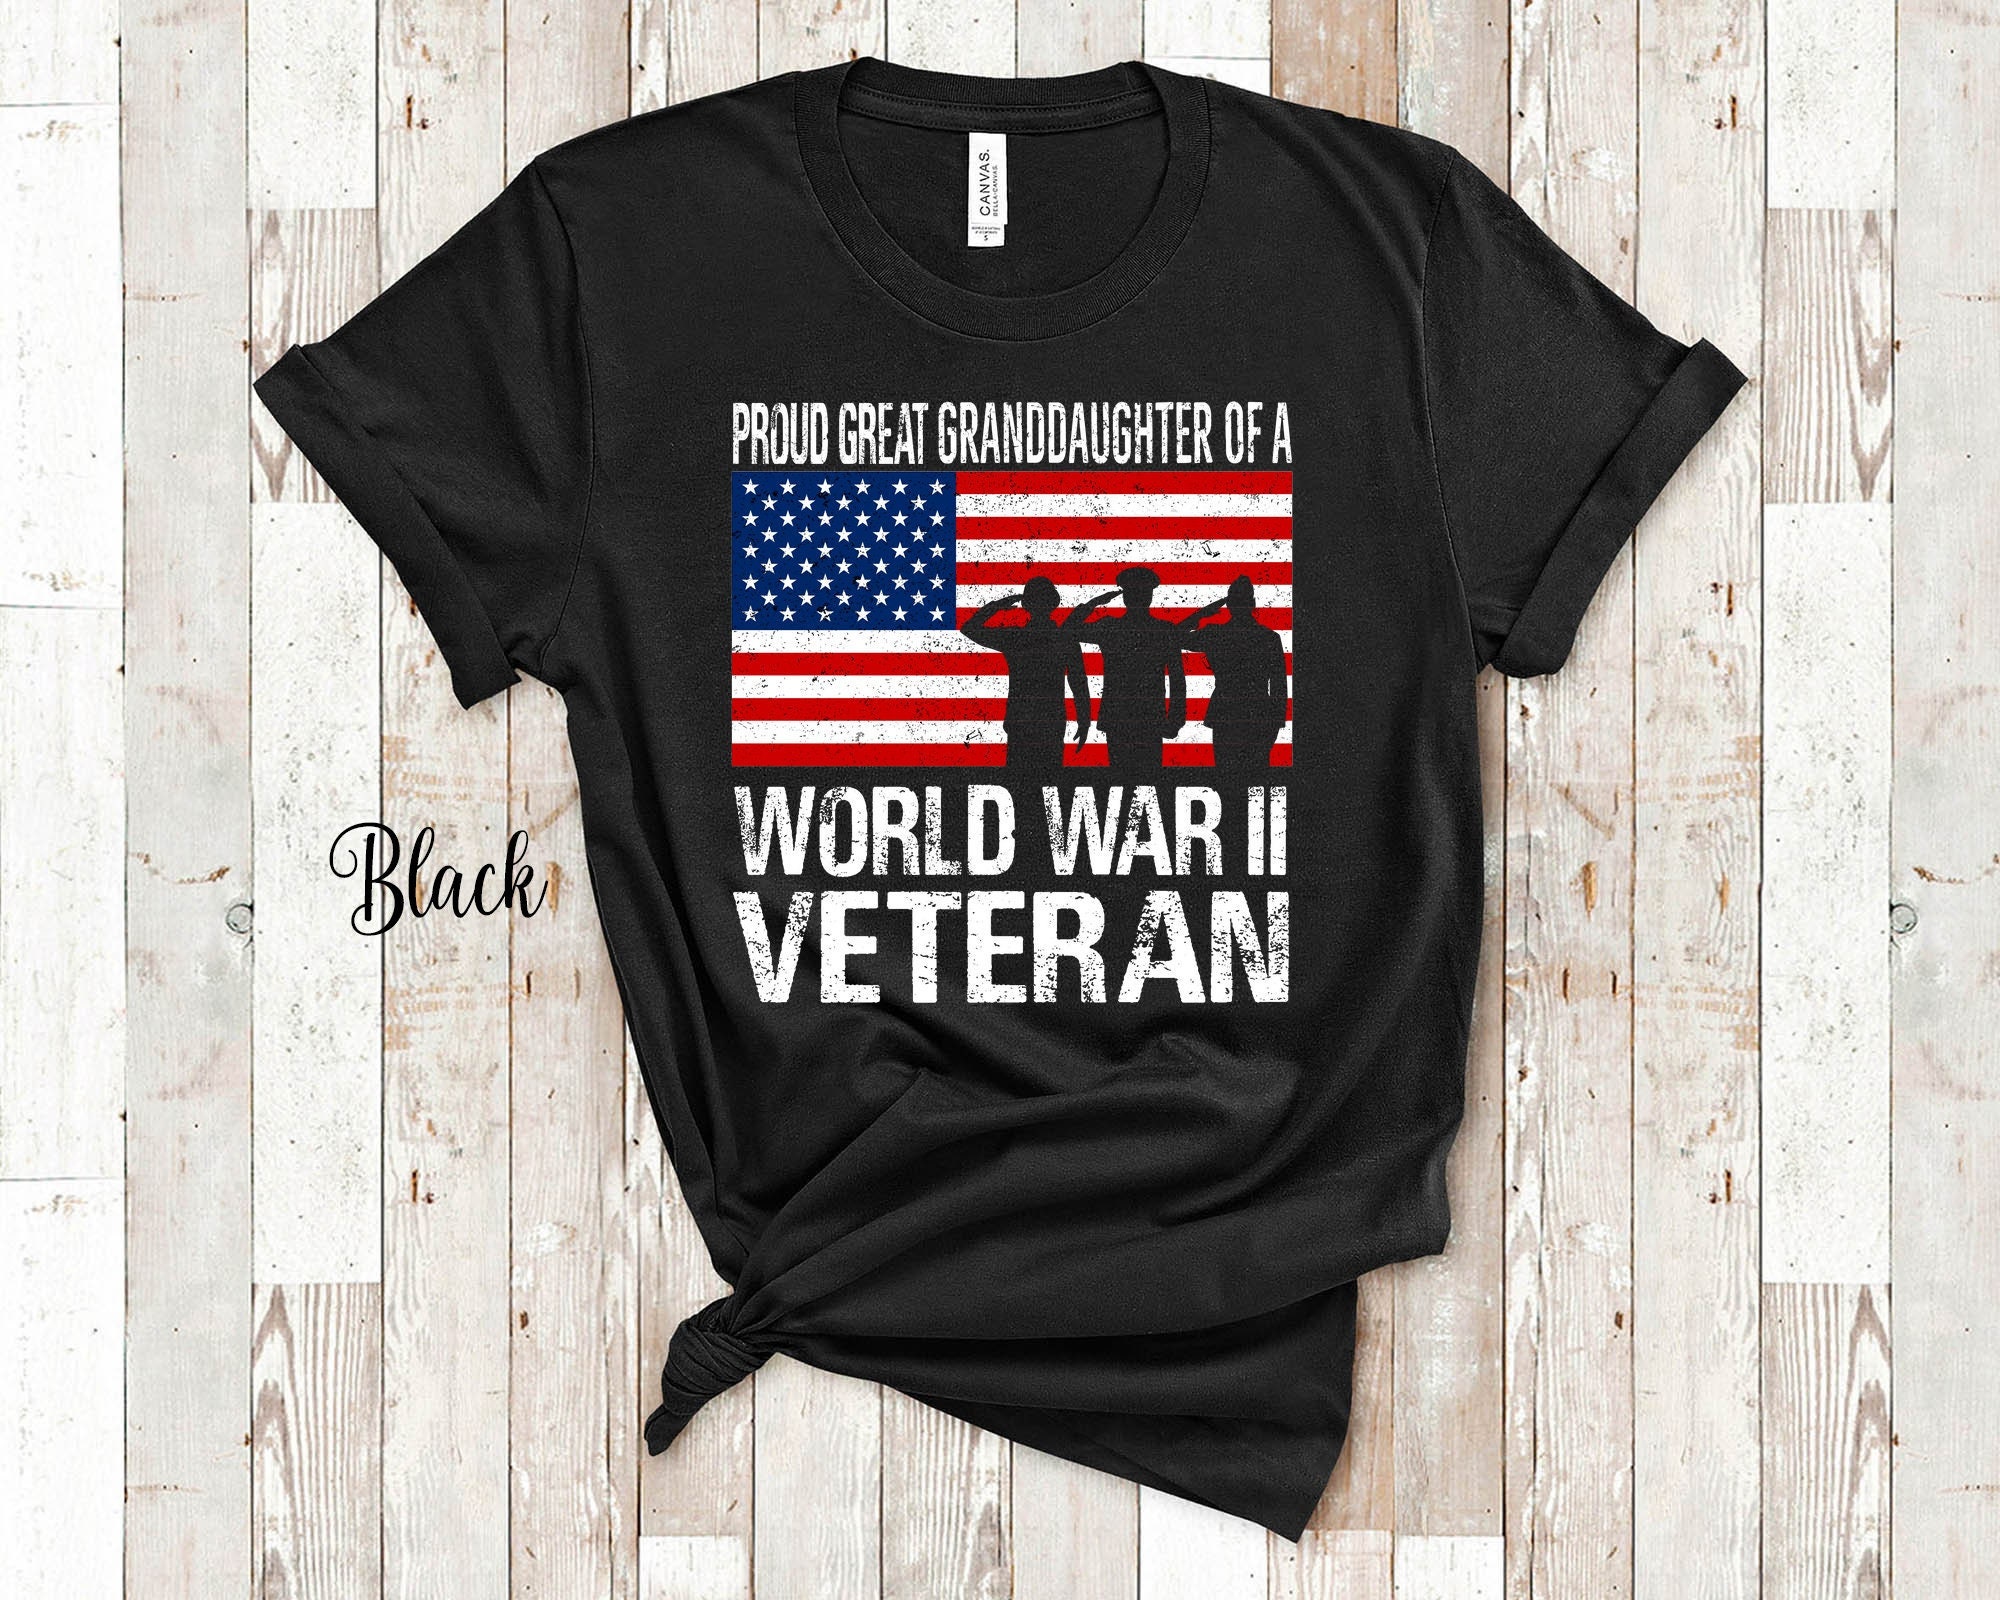 Vintage mijn vader is in het leger Texas T shirt tweede Wereldoorlog Kleding Unisex kinderkleding Tops & T-shirts T-shirts T-shirts met print 